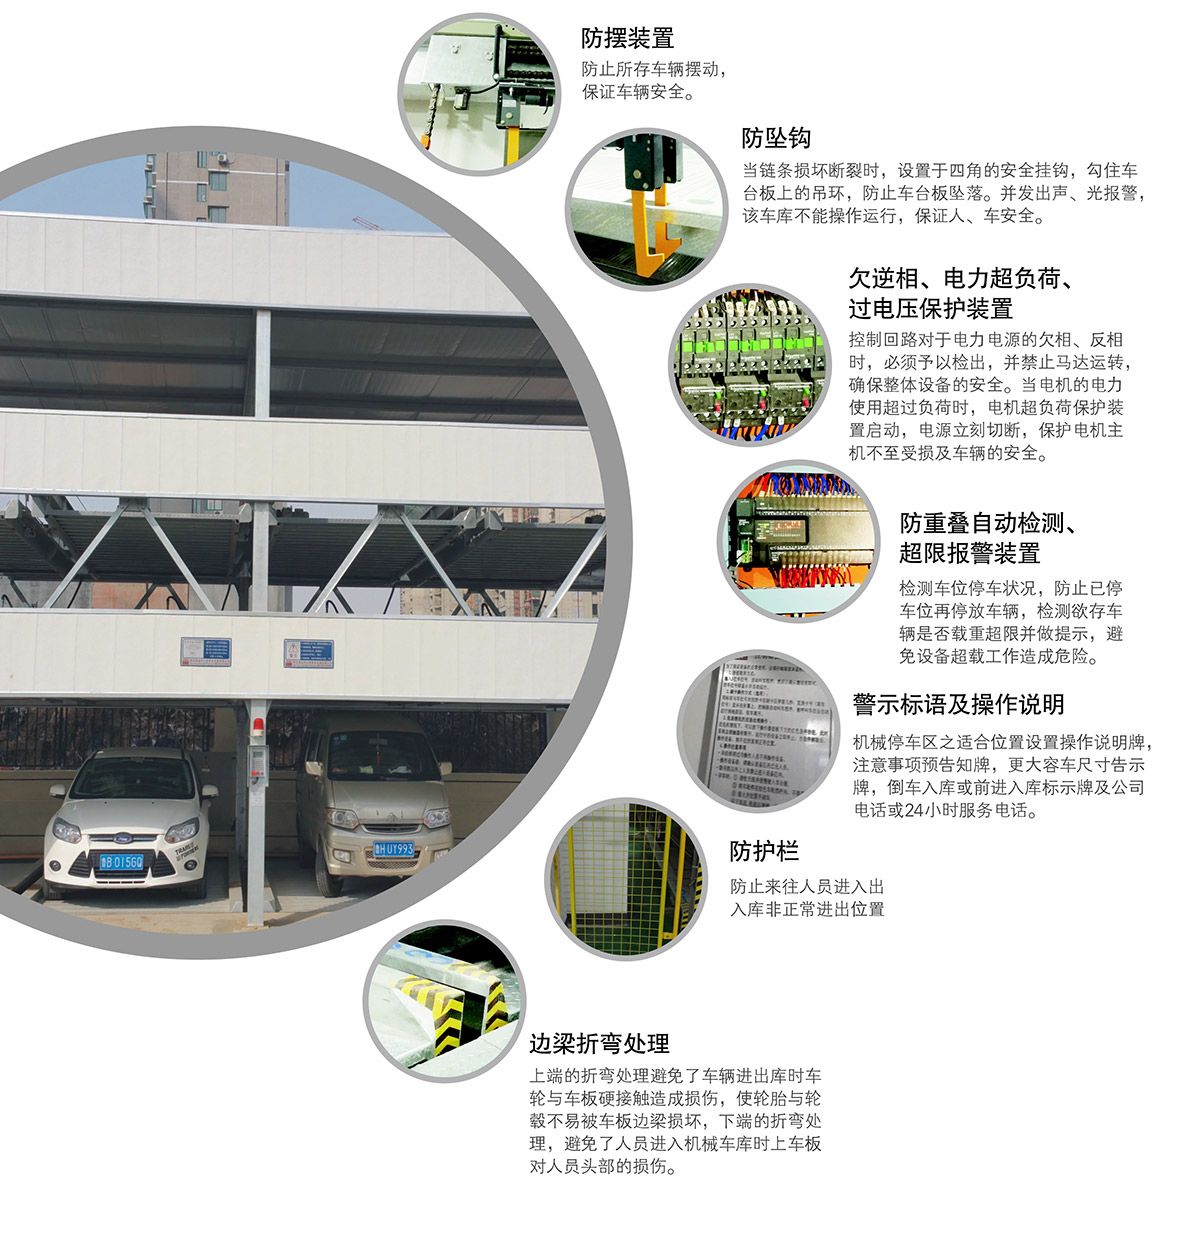 四川成都负一正二地坑PSH3D1三层升降横移类机械式立体车库设备安全保护装置.jpg